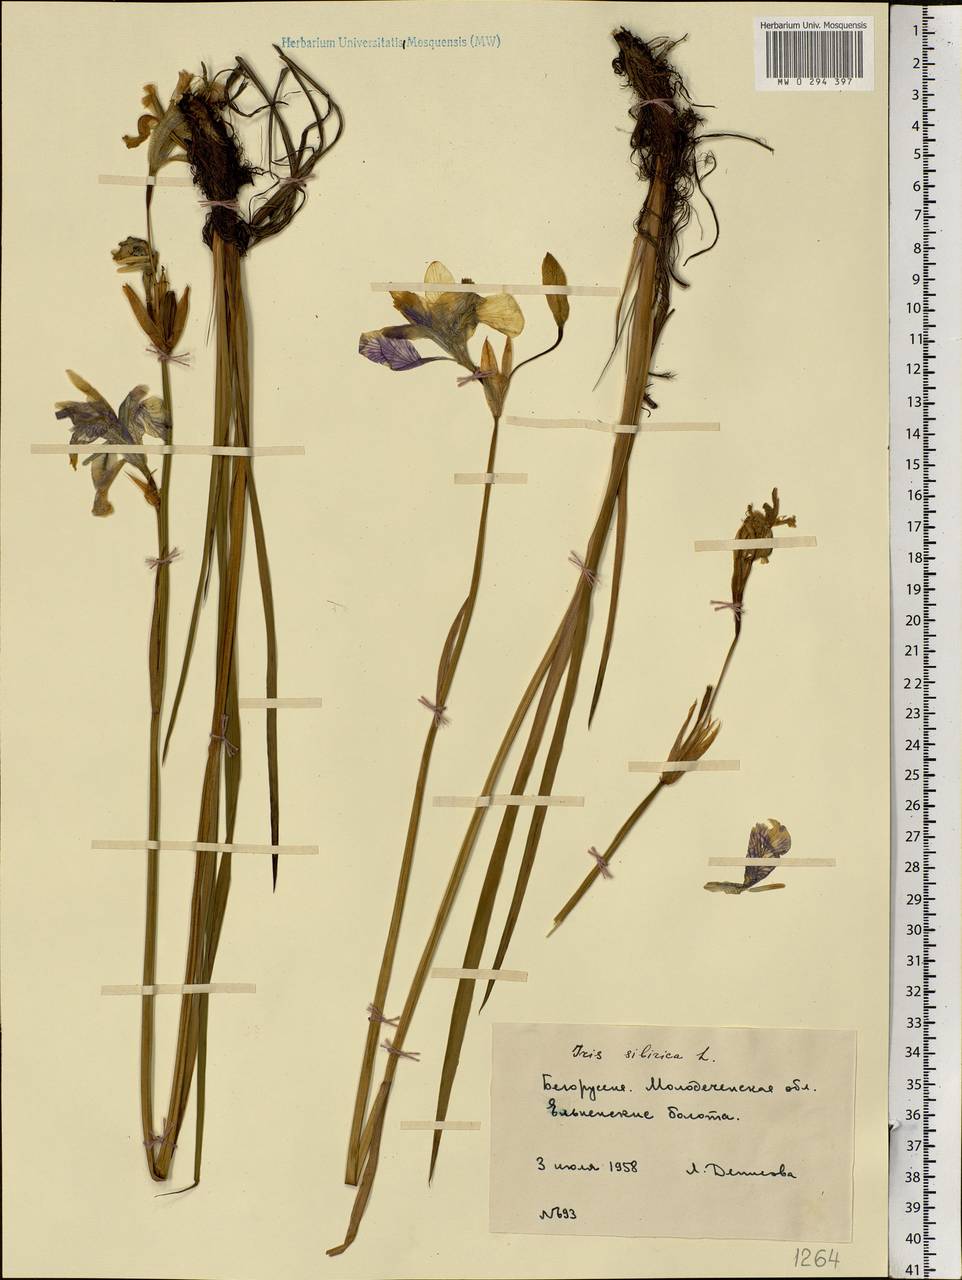 Iris sibirica L., Eastern Europe, Belarus (E3a) (Belarus)